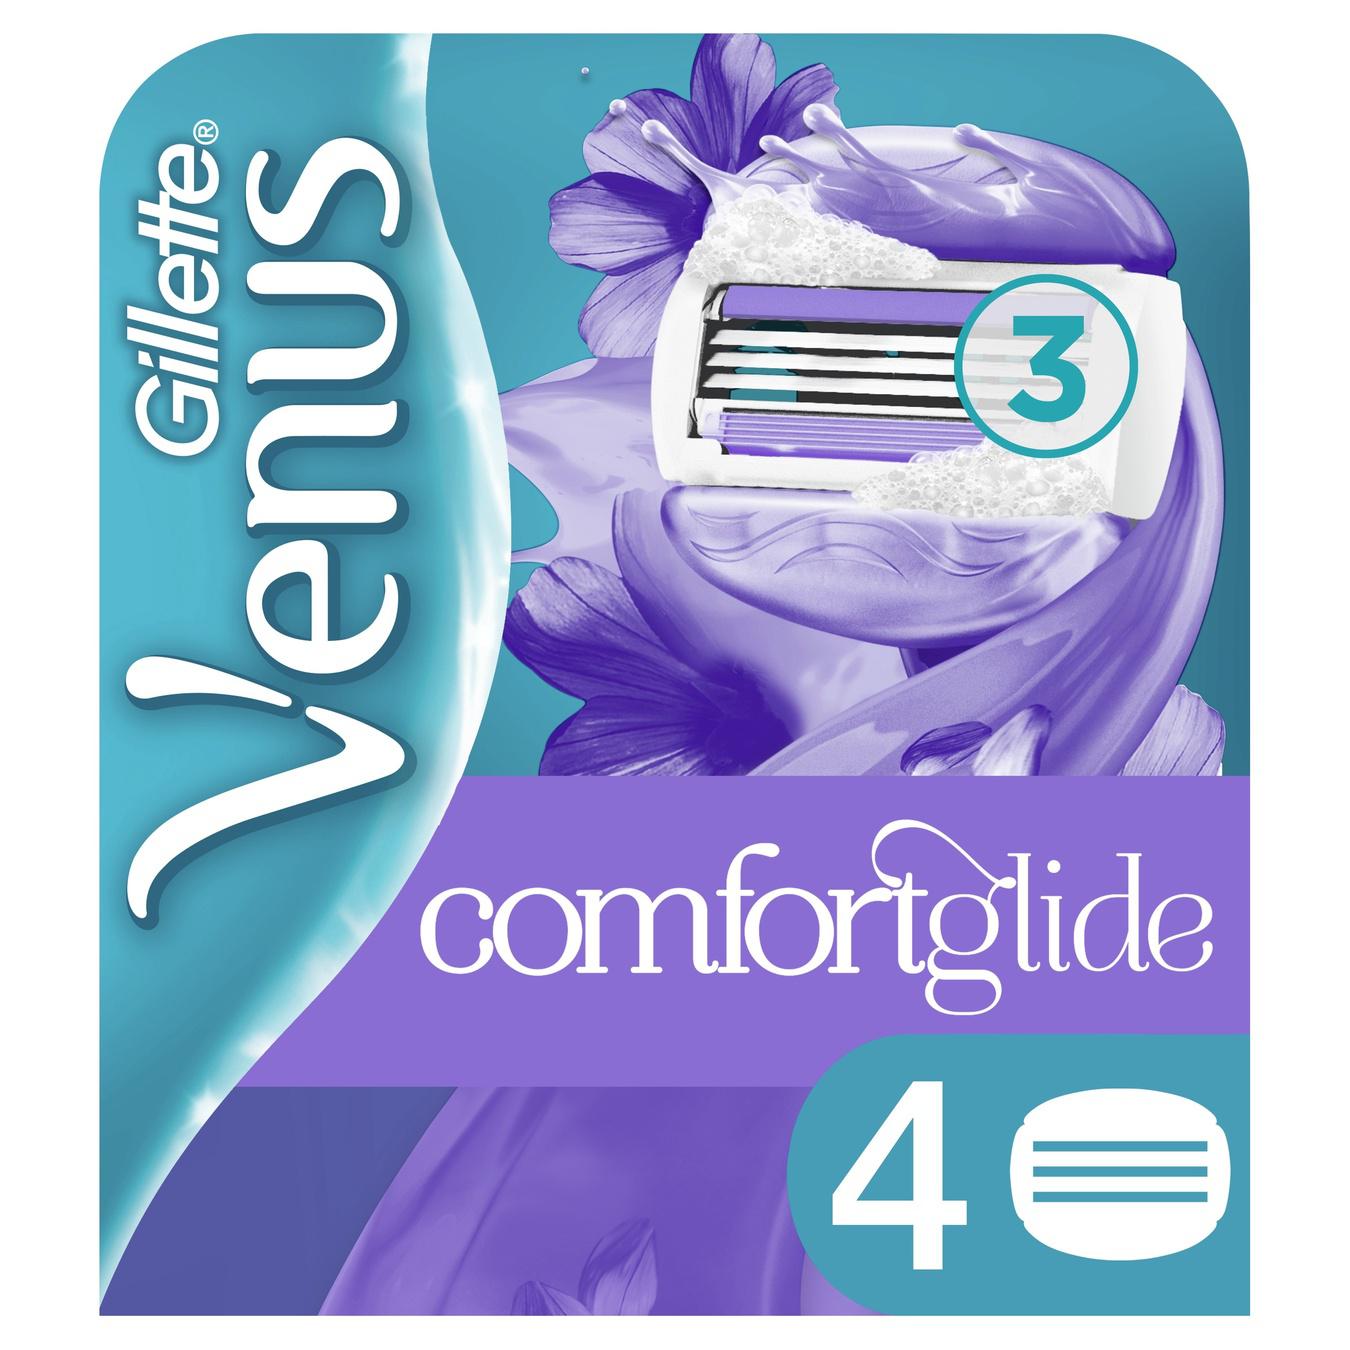 Cassettes Gillette Venus Comfort Glide Breeze replaceable for shaving 4pcs